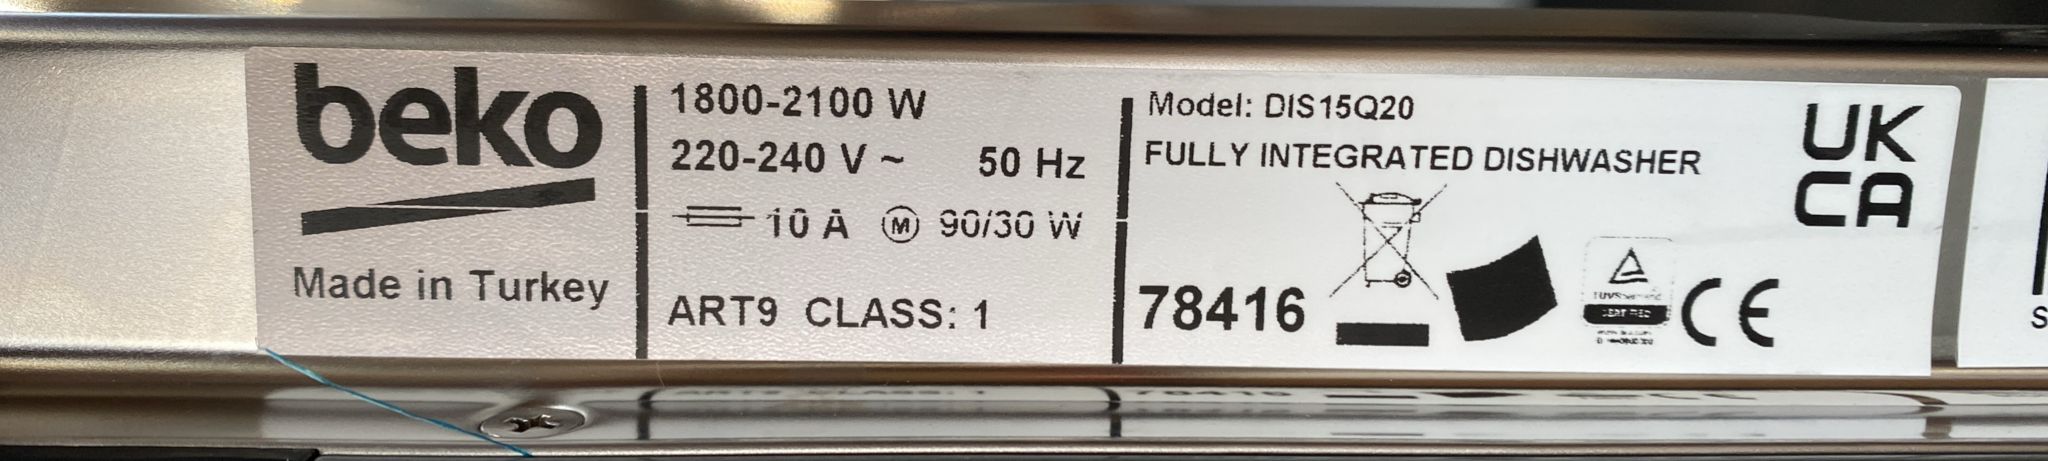 Beko DIS15Q20 Integrated Dishwasher-9500